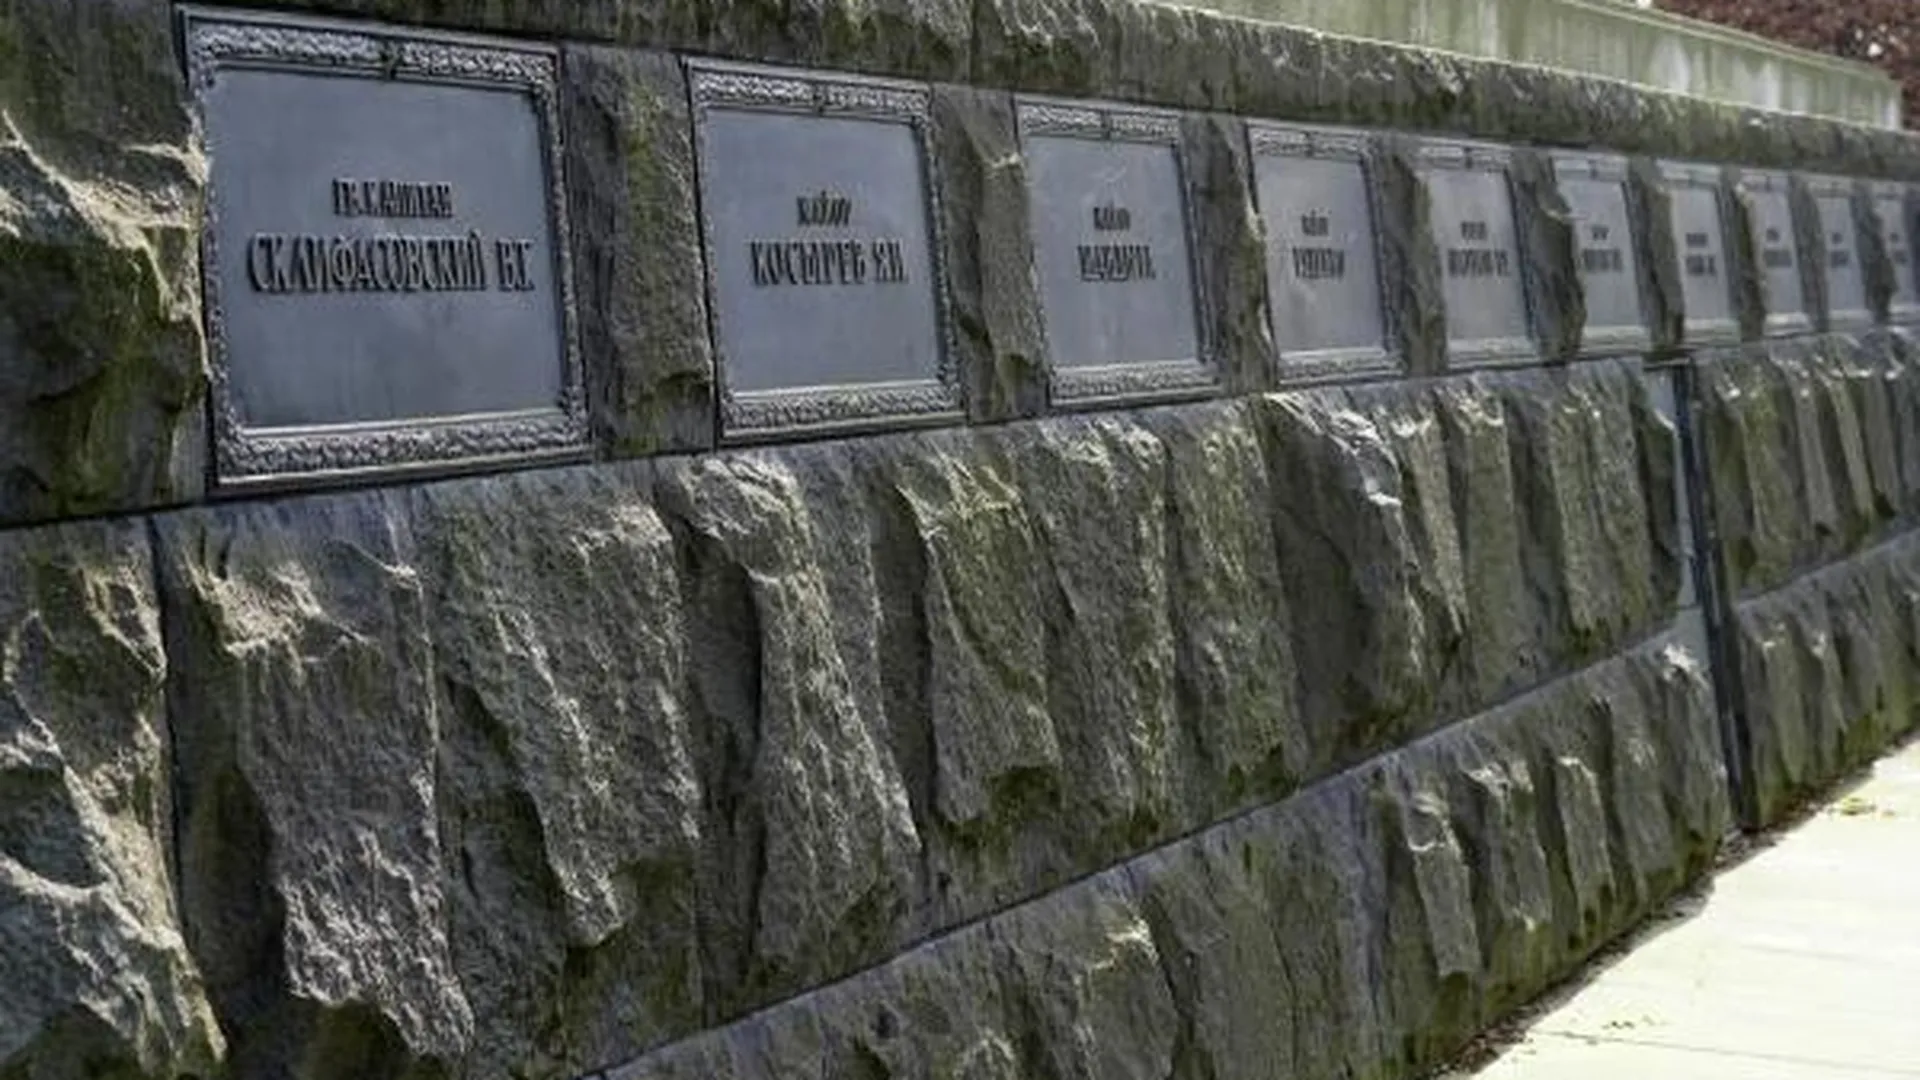 Памятные доски с именами павших солдат, установленные в основании обелиска на территории мемориала воинам Советской армии в парке Шенхольцер-Хайде в административном округе Берлина Панкове. На территории мемориального комплекса захоронены останки более 13 тысяч советских воинов, павших при штурме Берлина в апреле — мае 1945 года